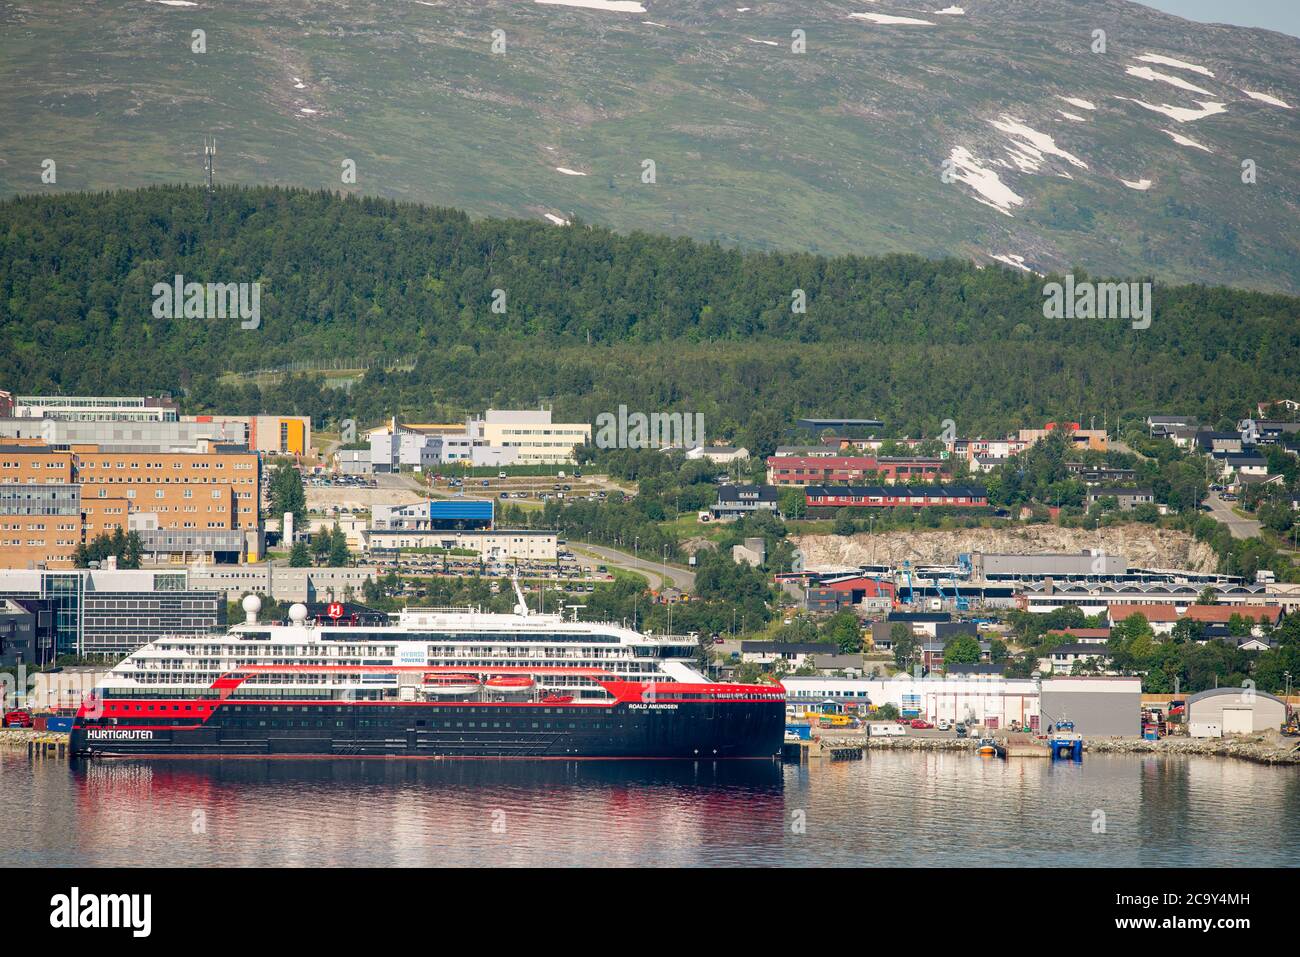 03 agosto 2020, Norvegia, Tromsø: Nave da crociera Hurtigrutens Roald Amundsen in banchina a Tromsø a causa di un freno corona a bordo Foto Stock